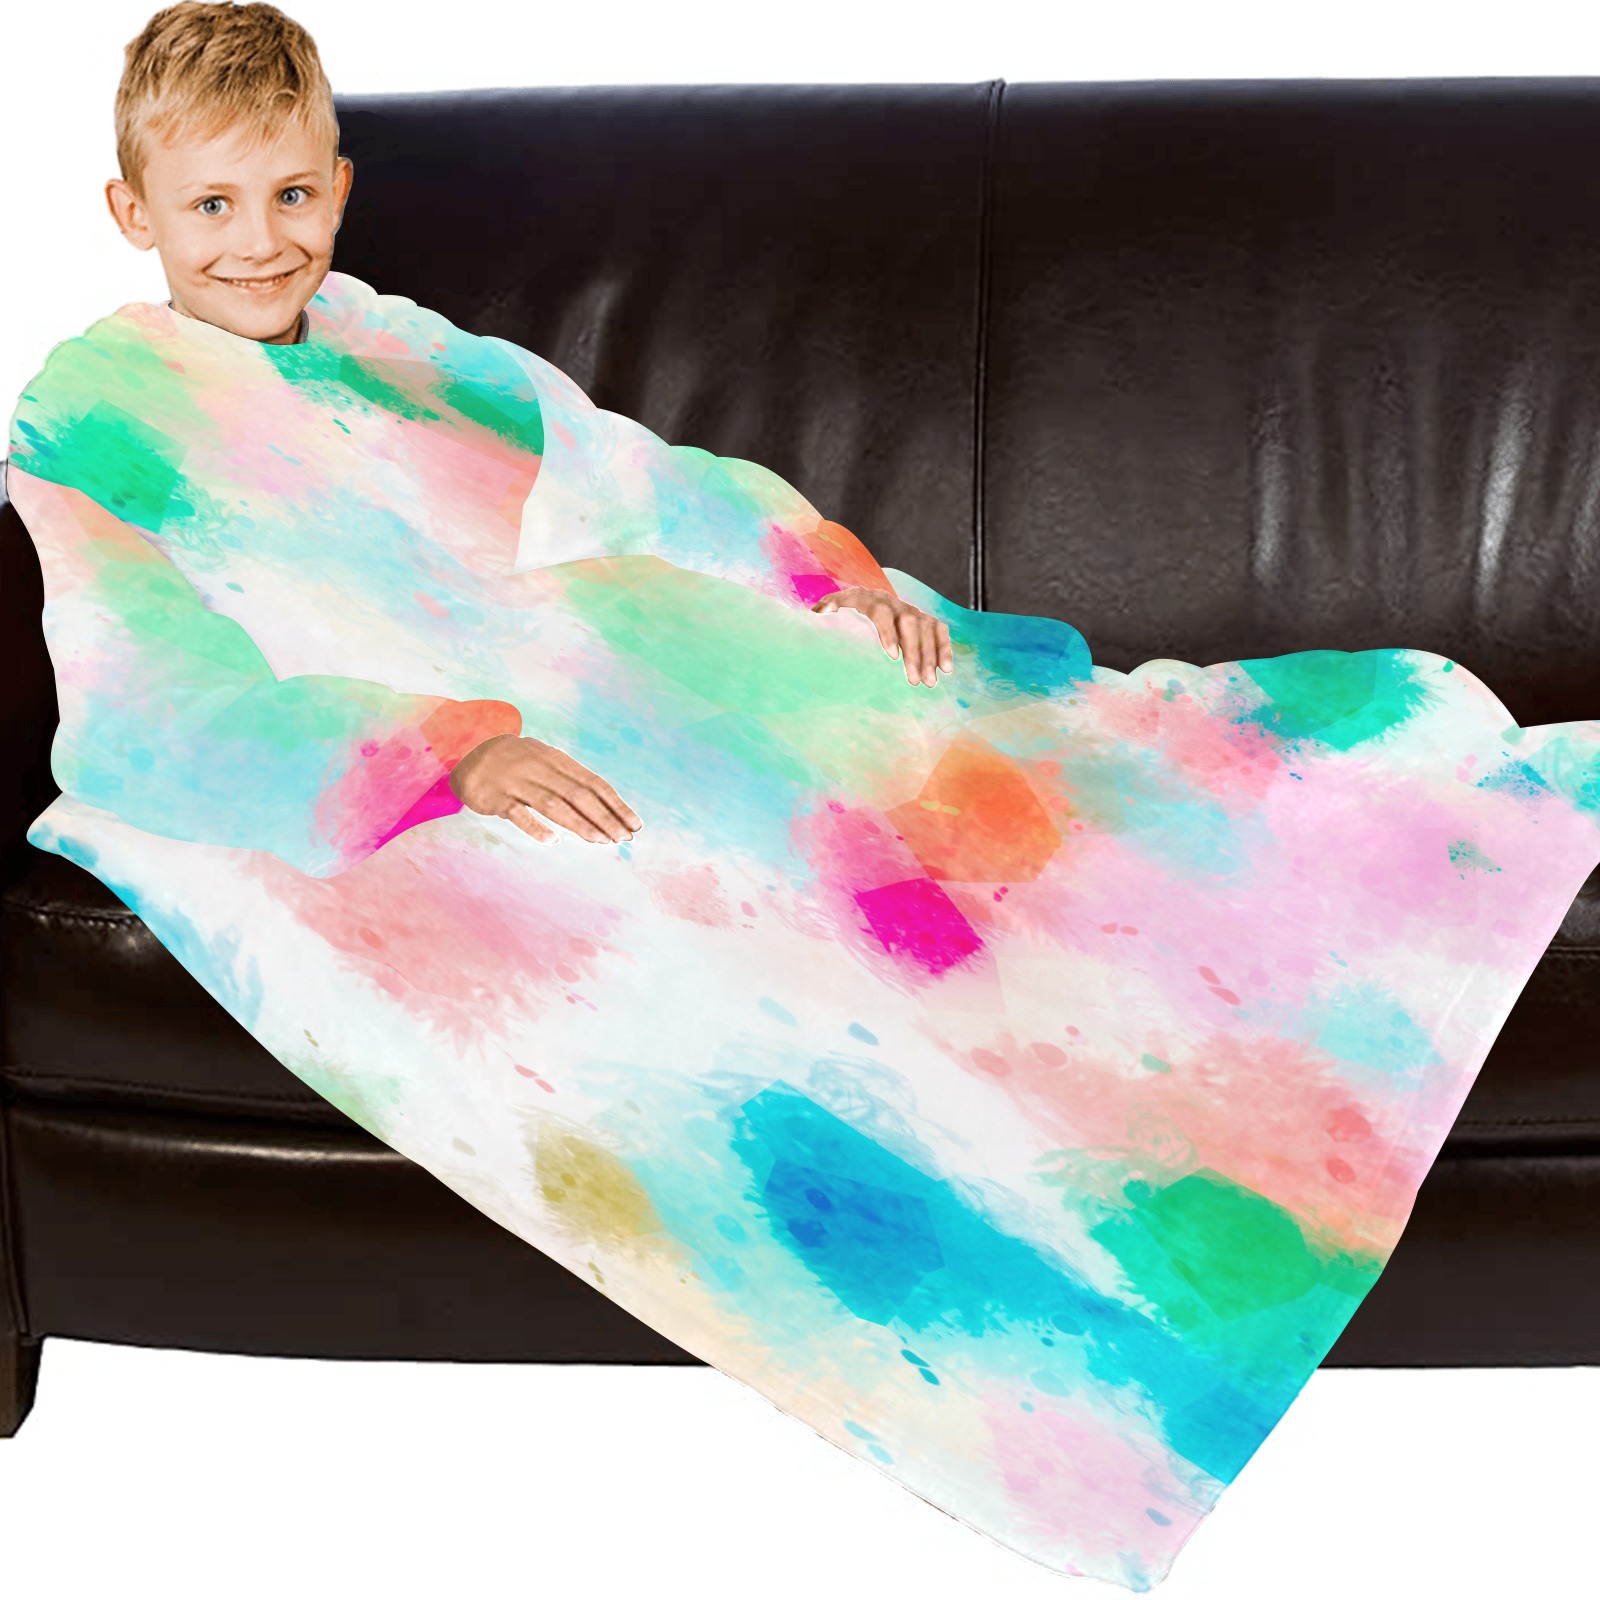 painteddreams Blanket Robe with Sleeves for Kids